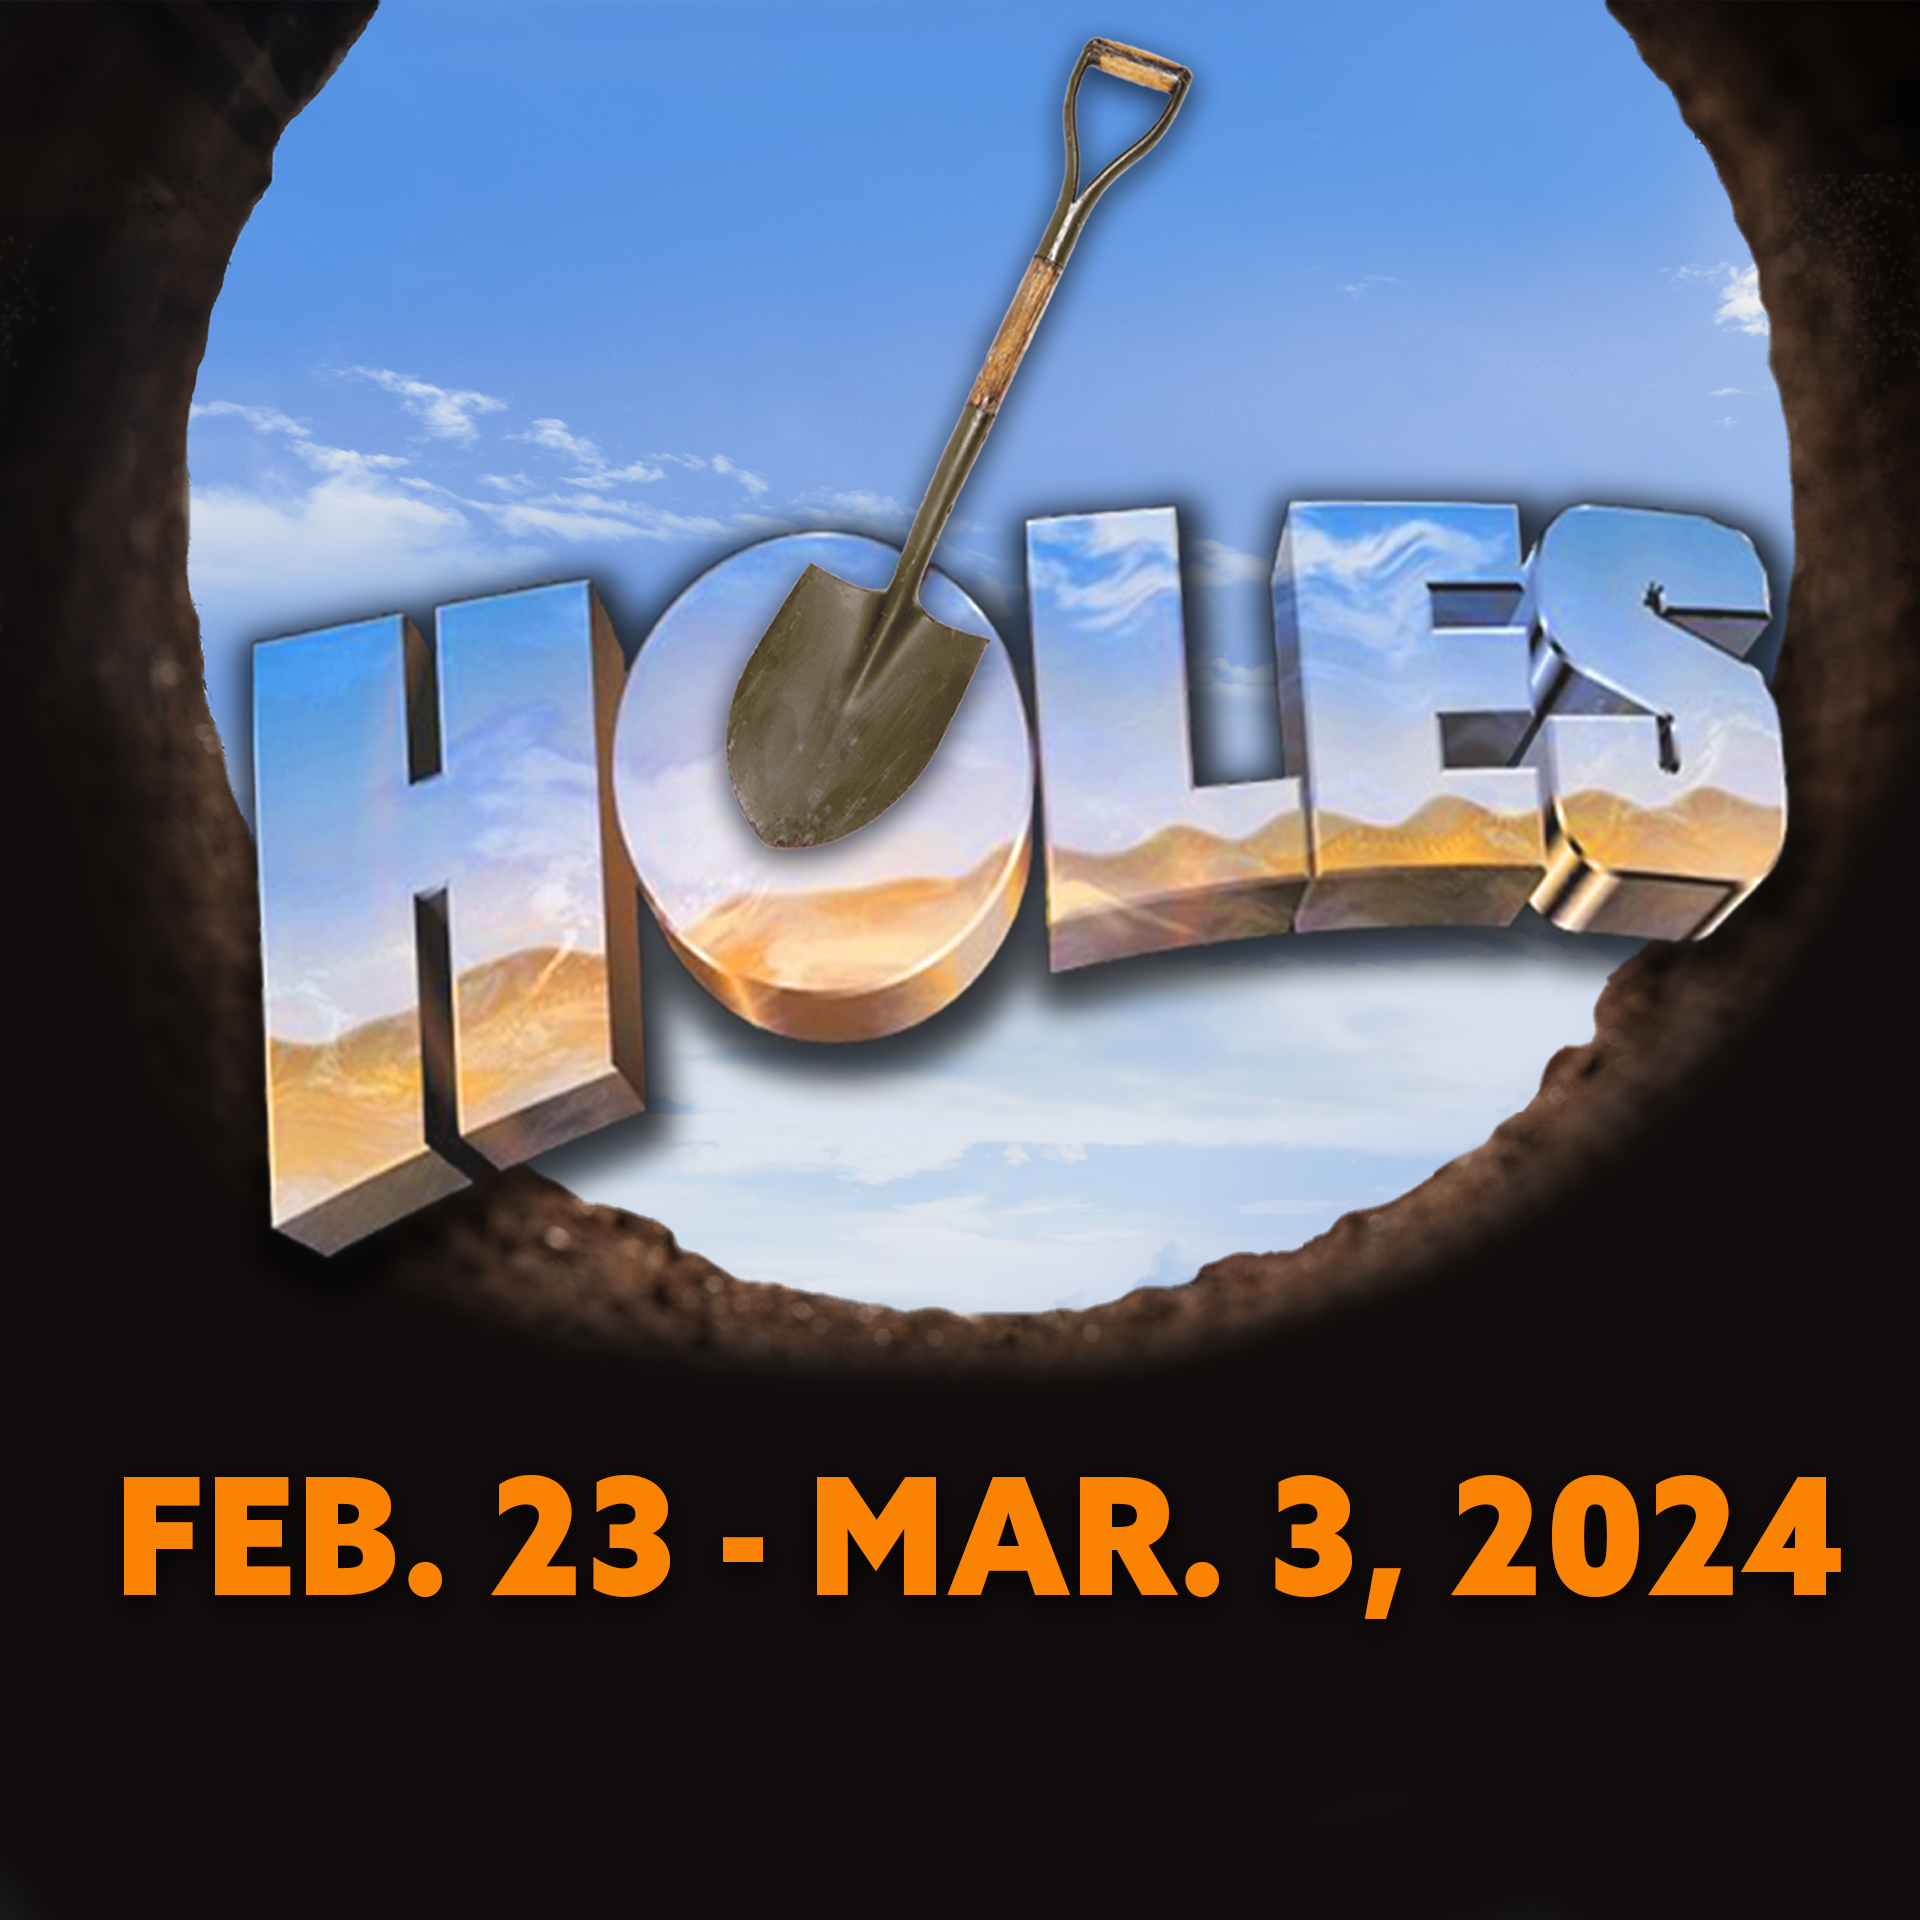 Holes Dates Square copy.png